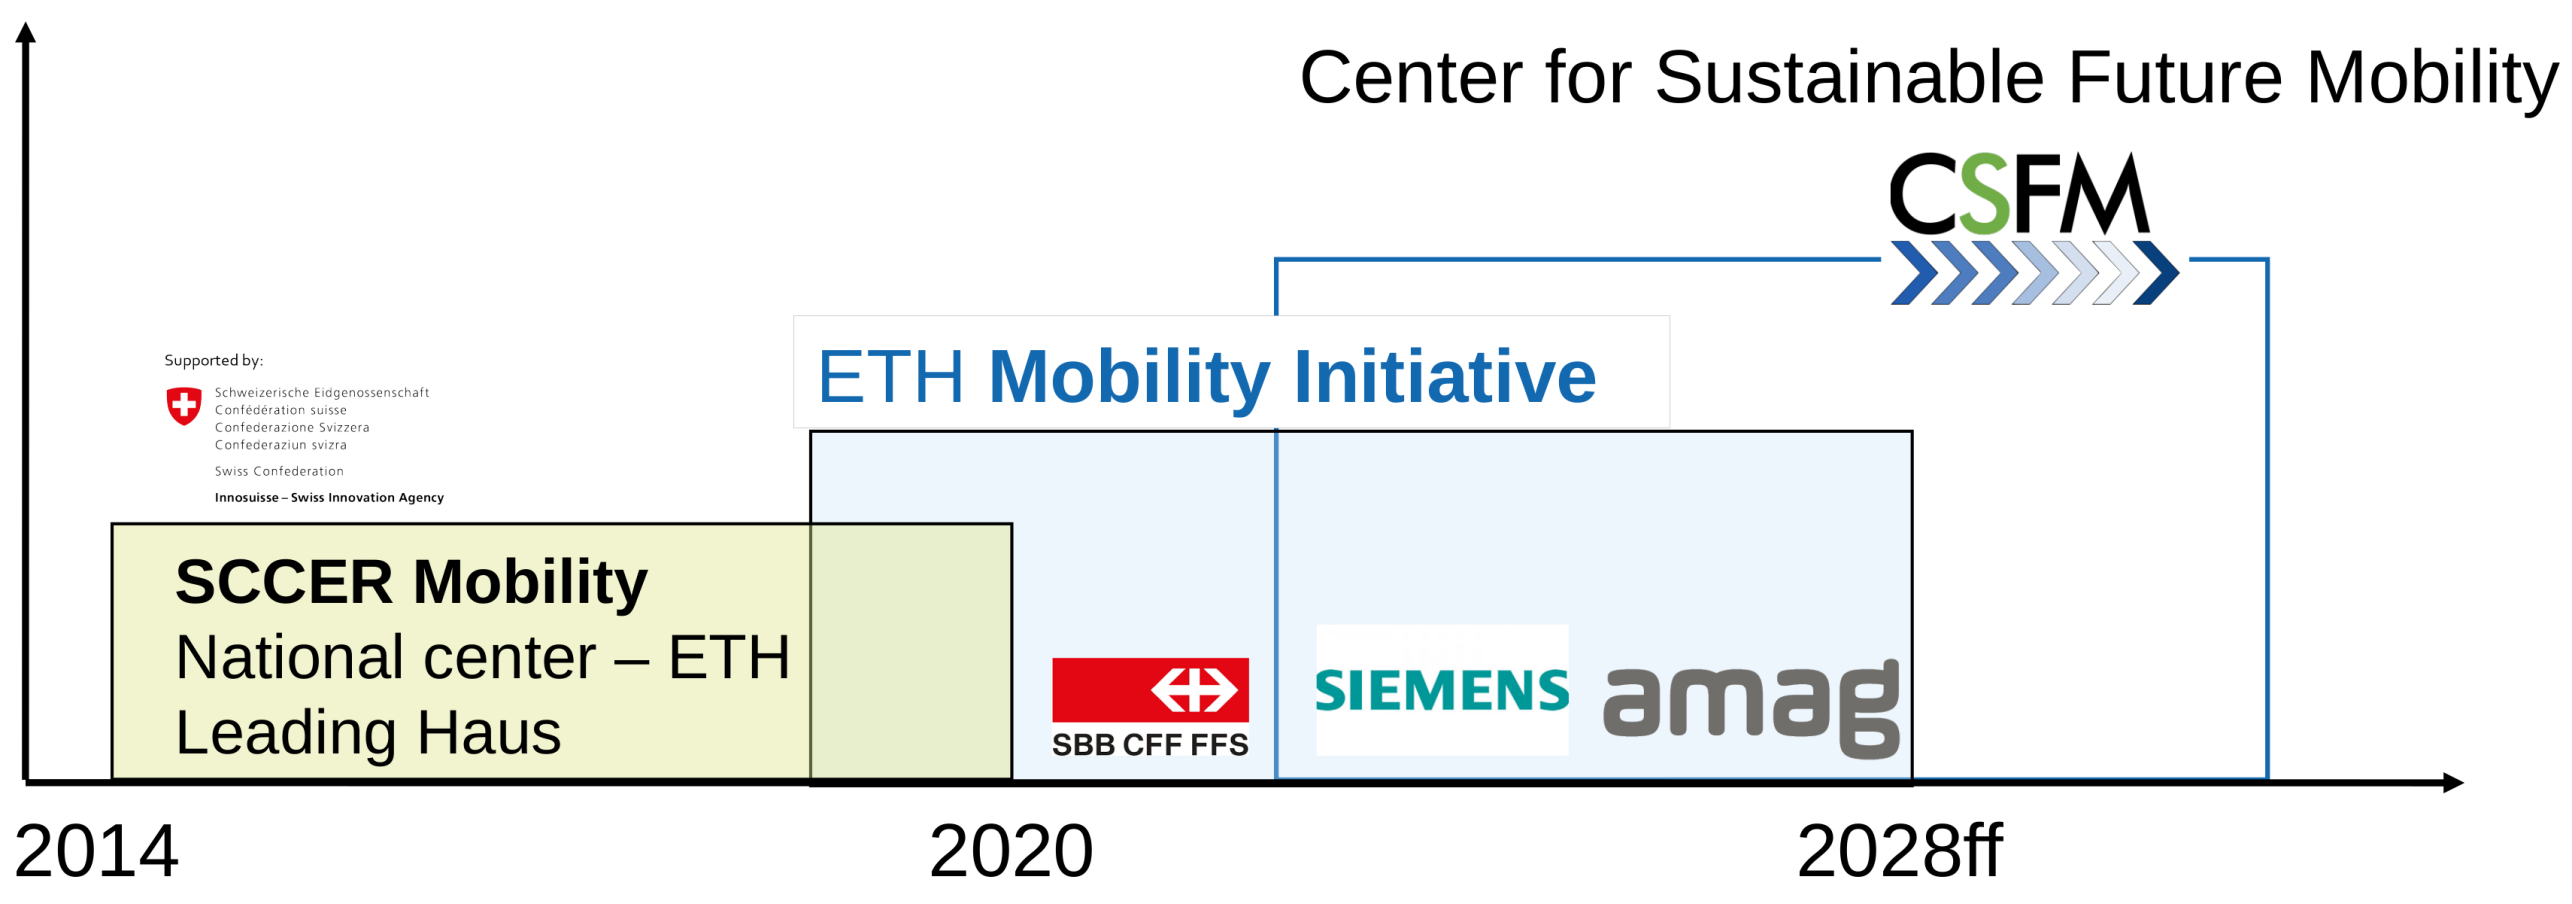 Vergrösserte Ansicht: Koordinierte Forschung und Innovation im Mobilitätsbereich an der ETH Zürich der letzten Jahre